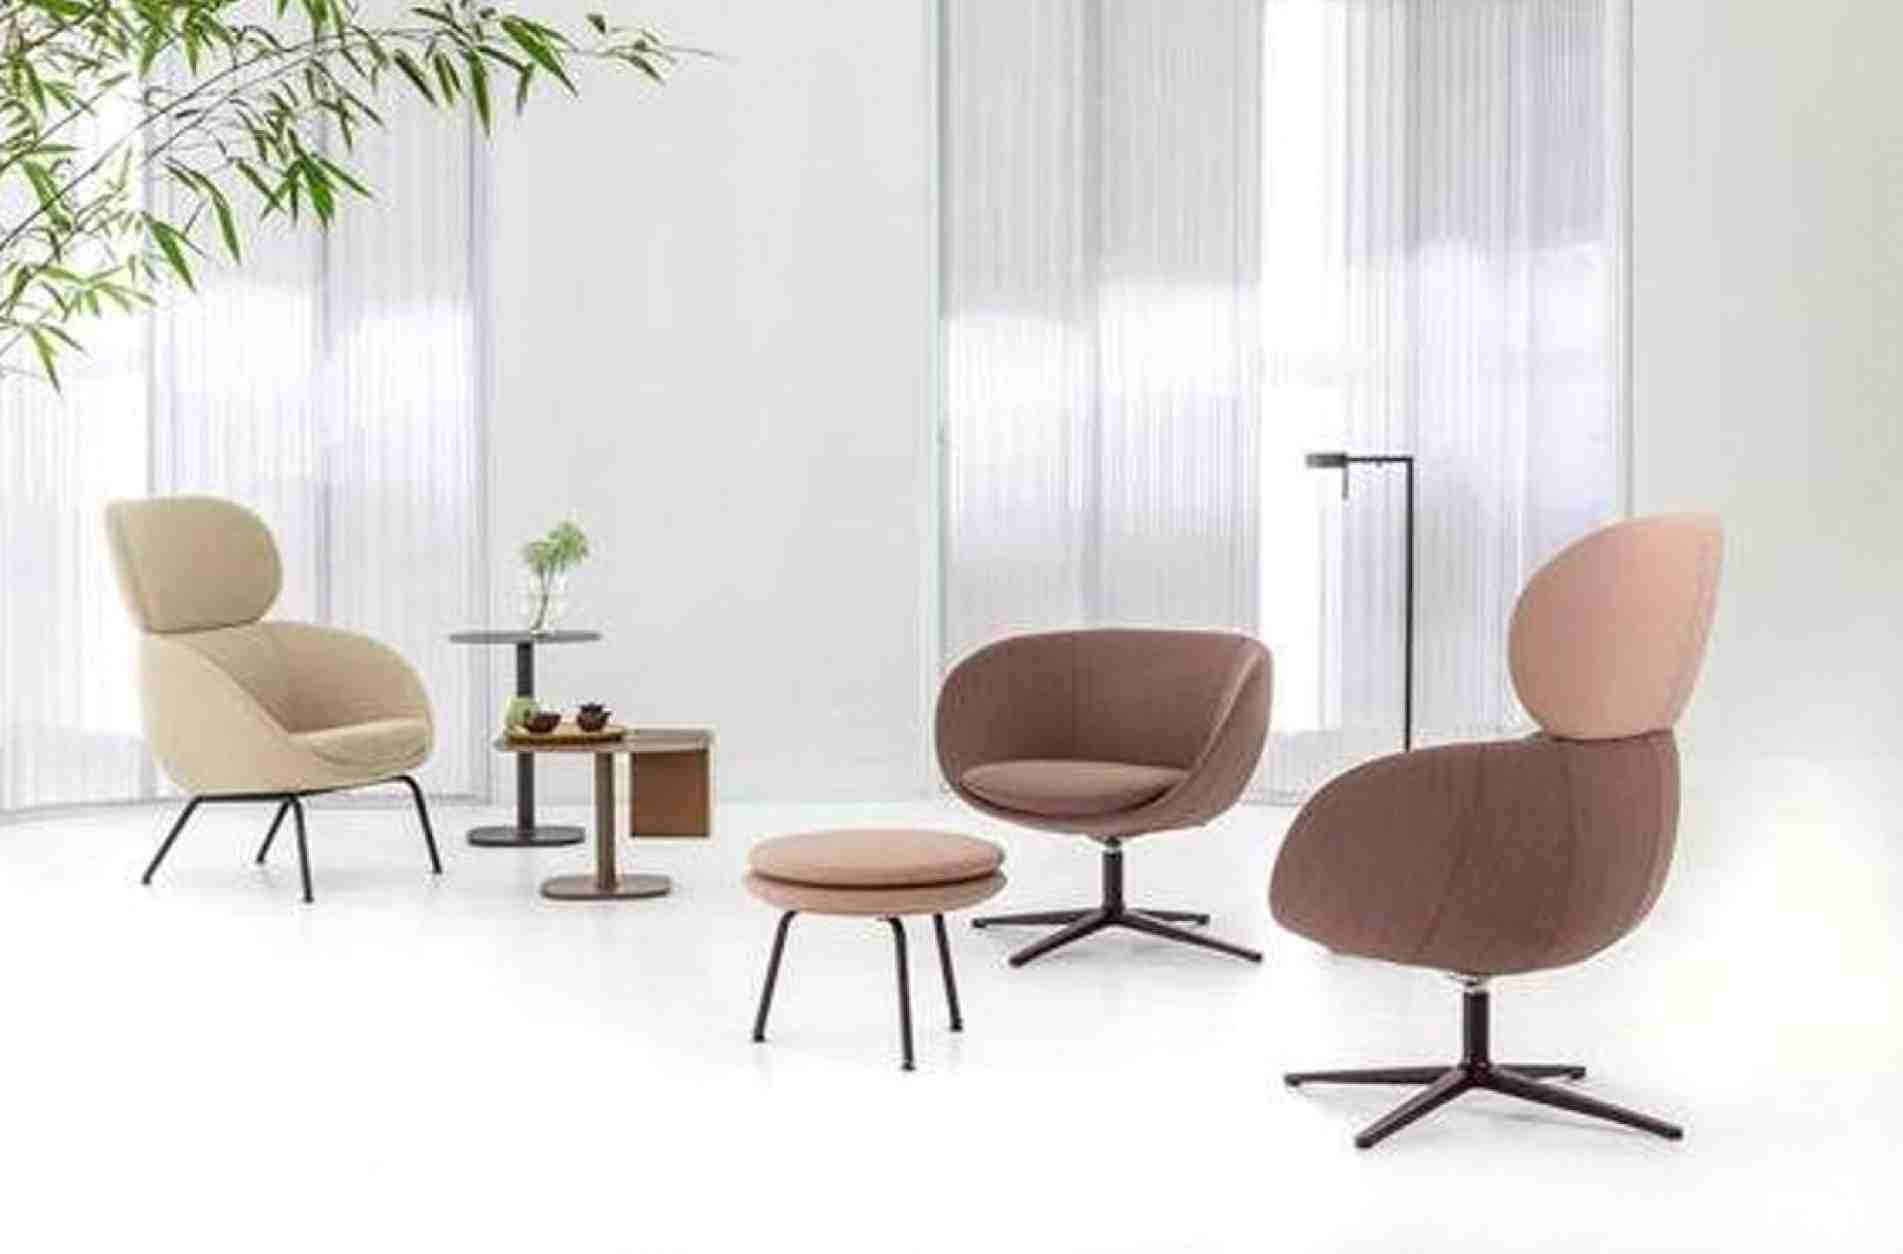 Design, conforto e qualidade são os pontos mais importantes quando a questão é a escolha de cadeiras para ambientes internos.